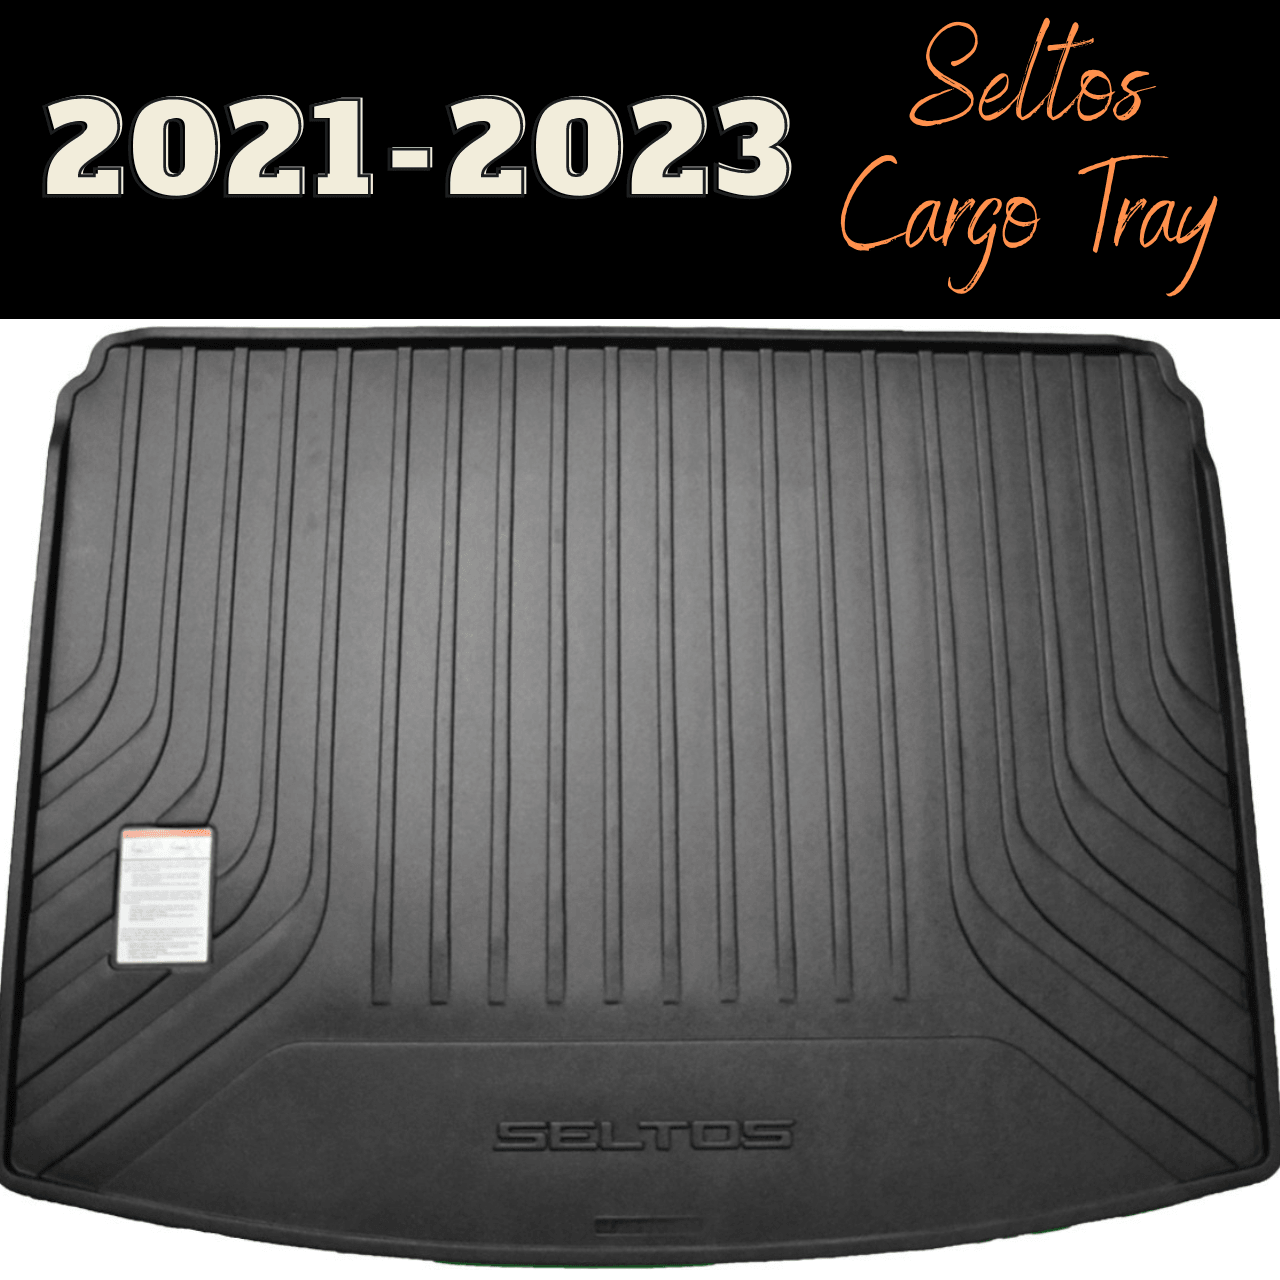 Kia Seltos Cargo Tray for 2021-2023 Seltos Models